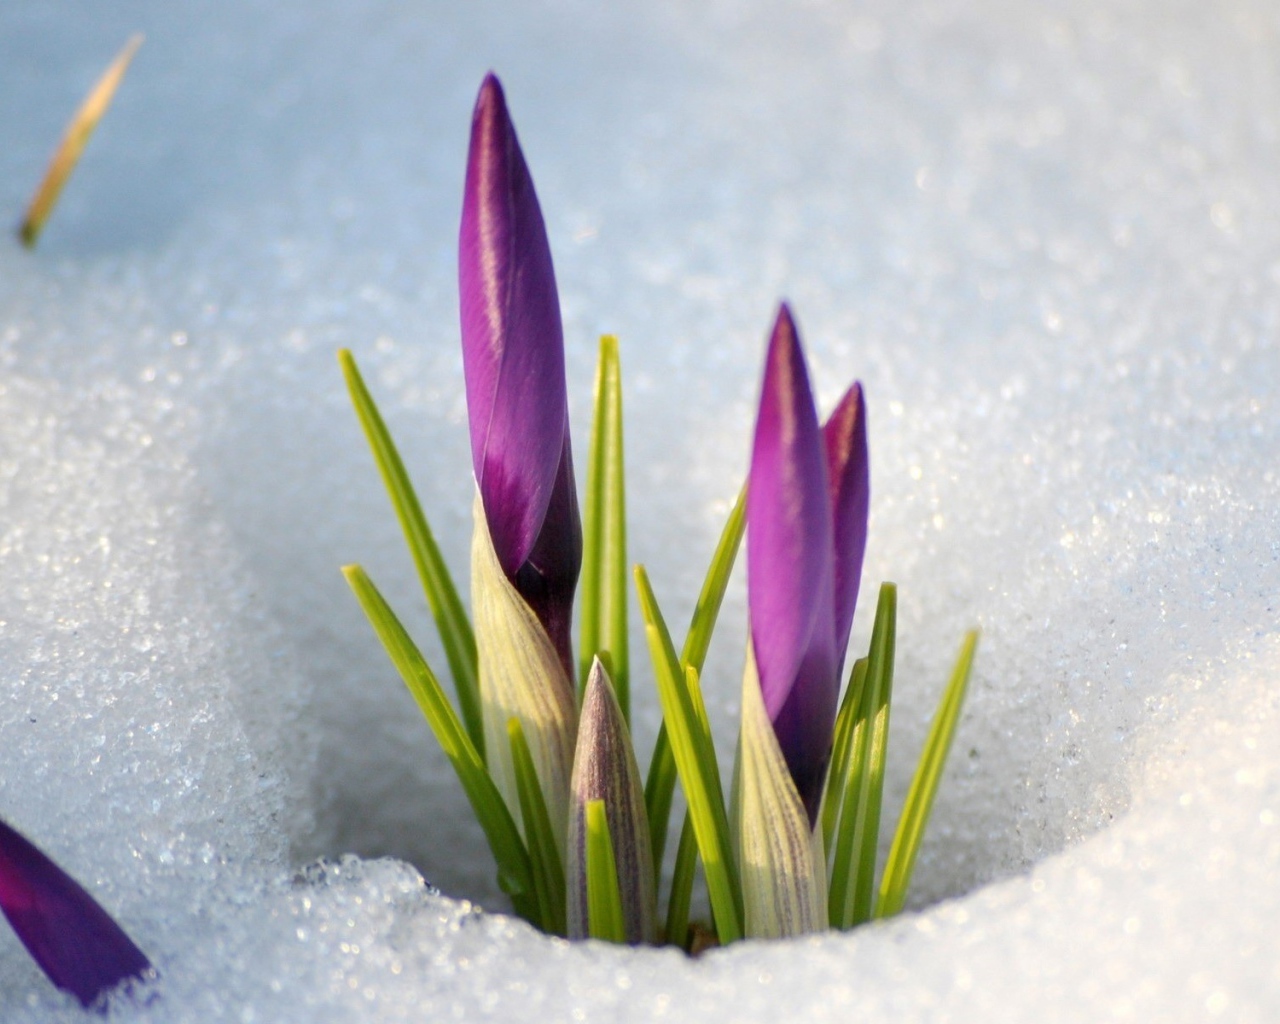 Цветы крокуса пробиваются сквозь снег весной